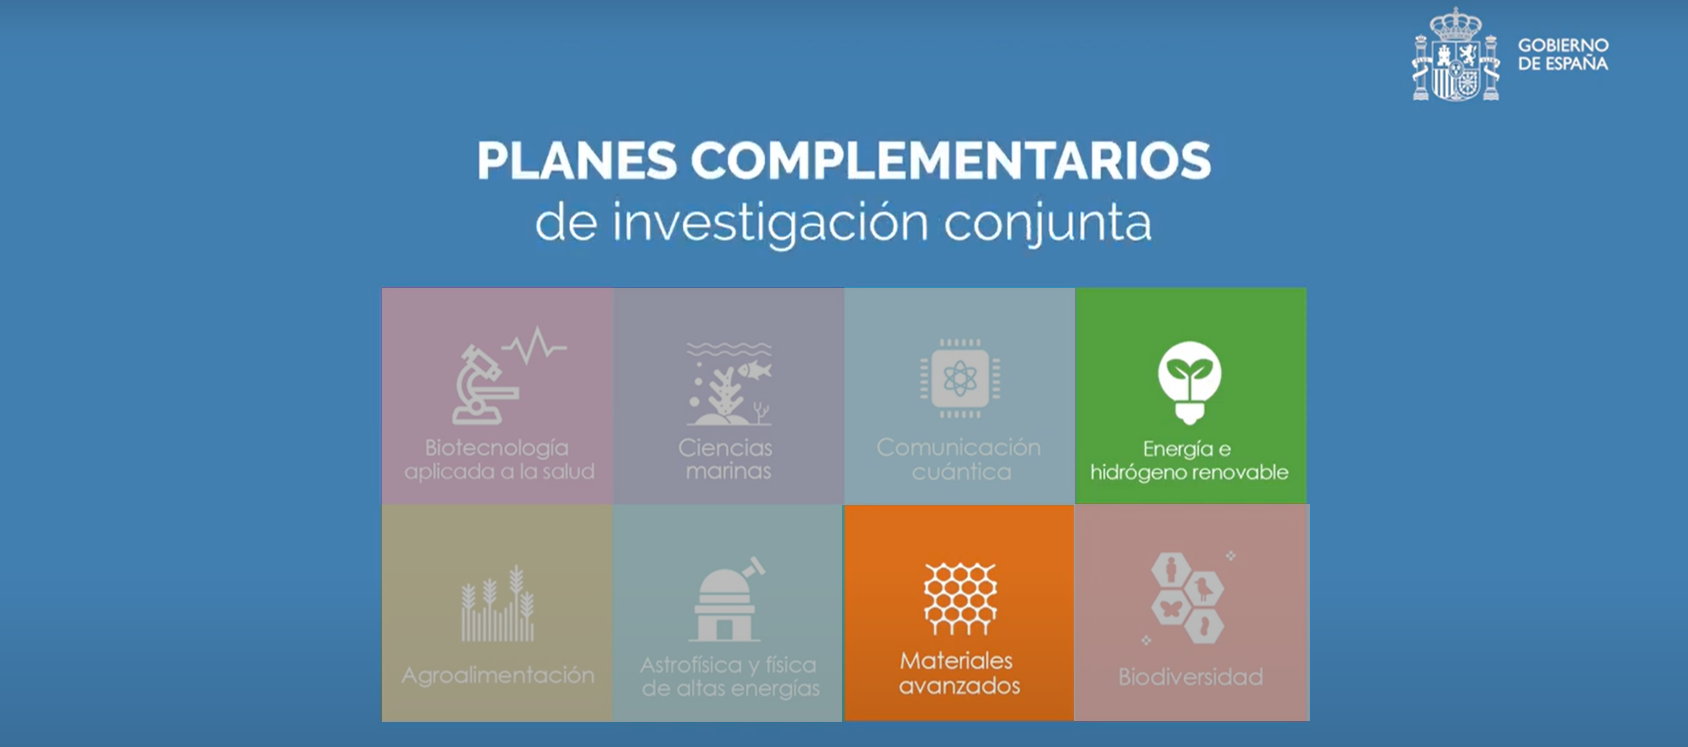 Planes de Investigación Conjunta de interés para SusChem-España: E, H2 y Materiales Avanzados